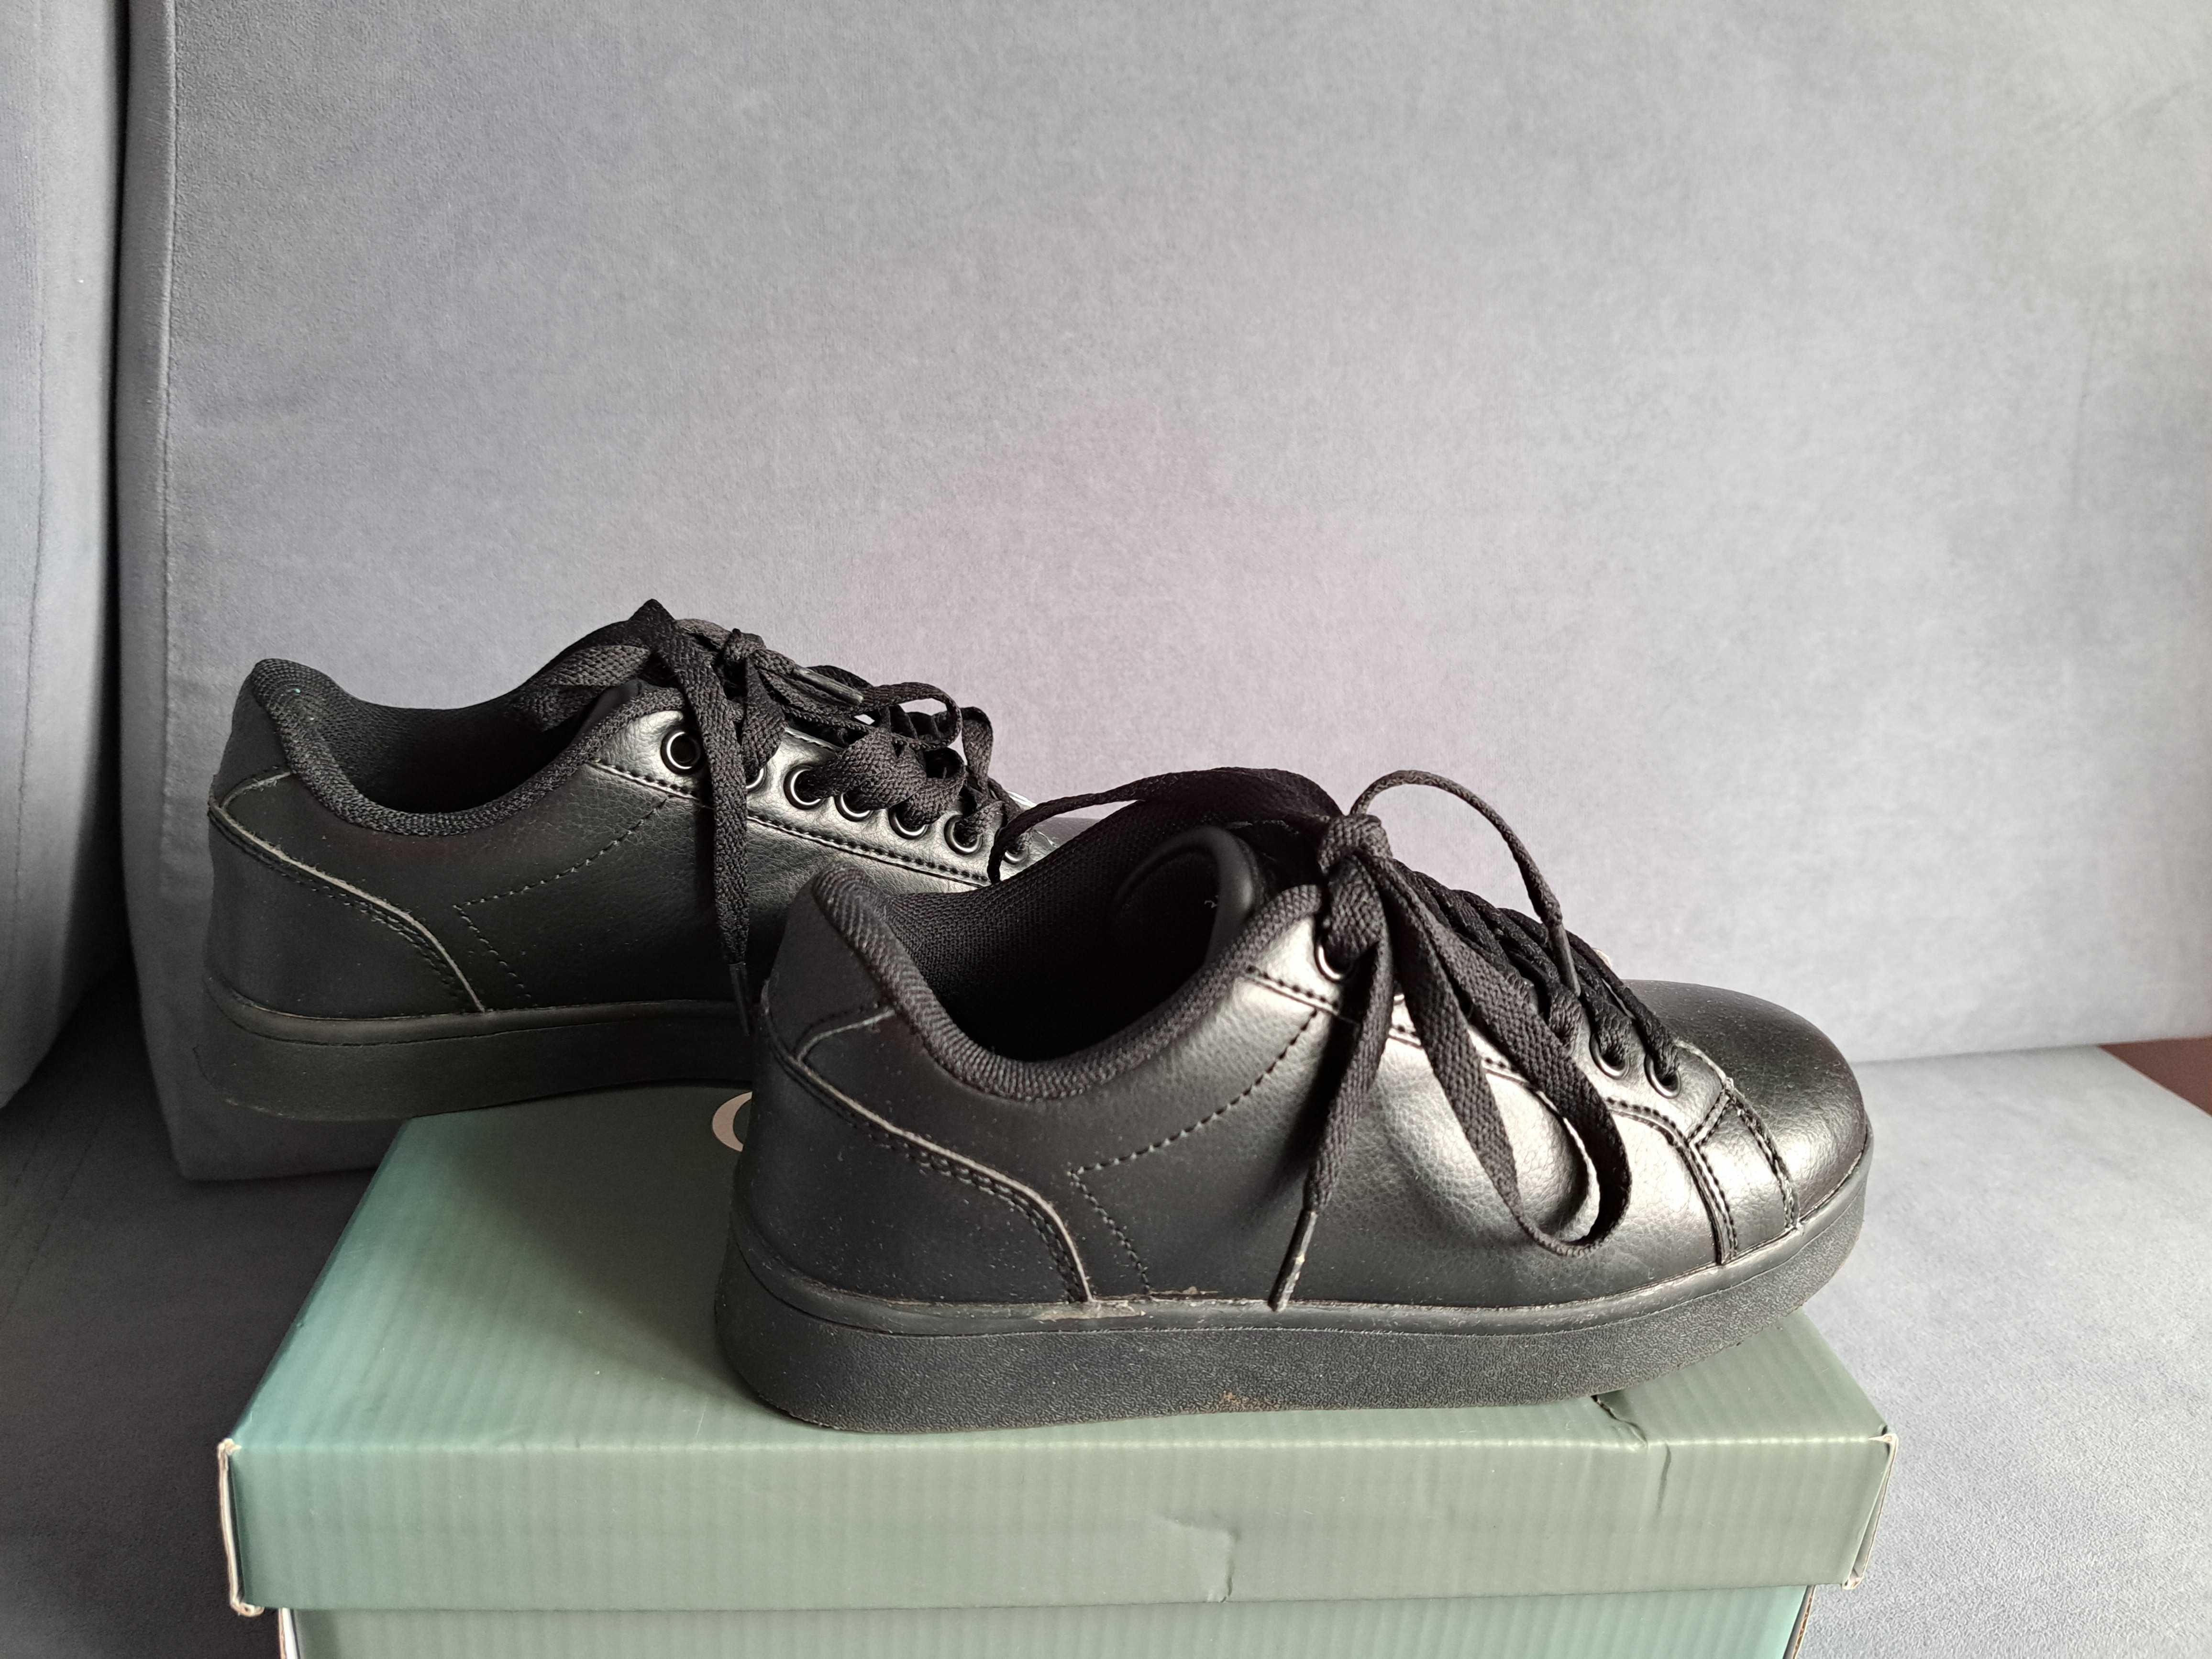 Czarne komunijne wiązane eleganckie buty Ottimo Ccc, rozmiar 34, ideał